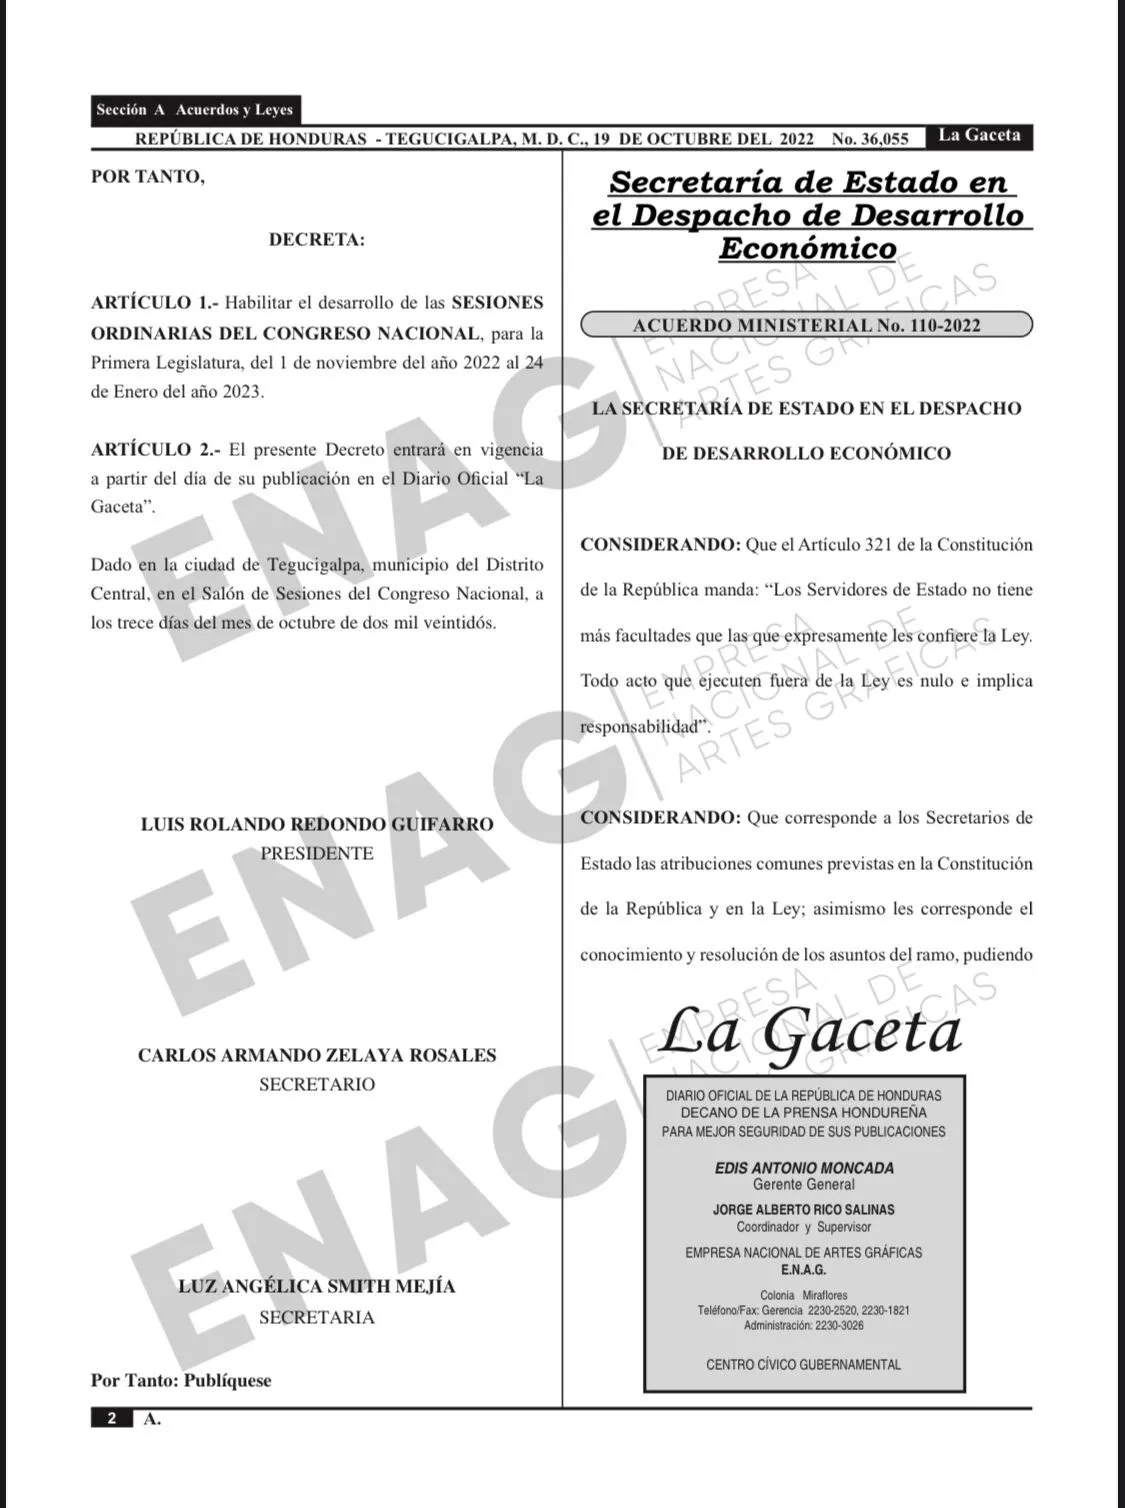 Publicado en La Gaceta decreto que habilita sesiones del CN hasta el 24 de enero 2023